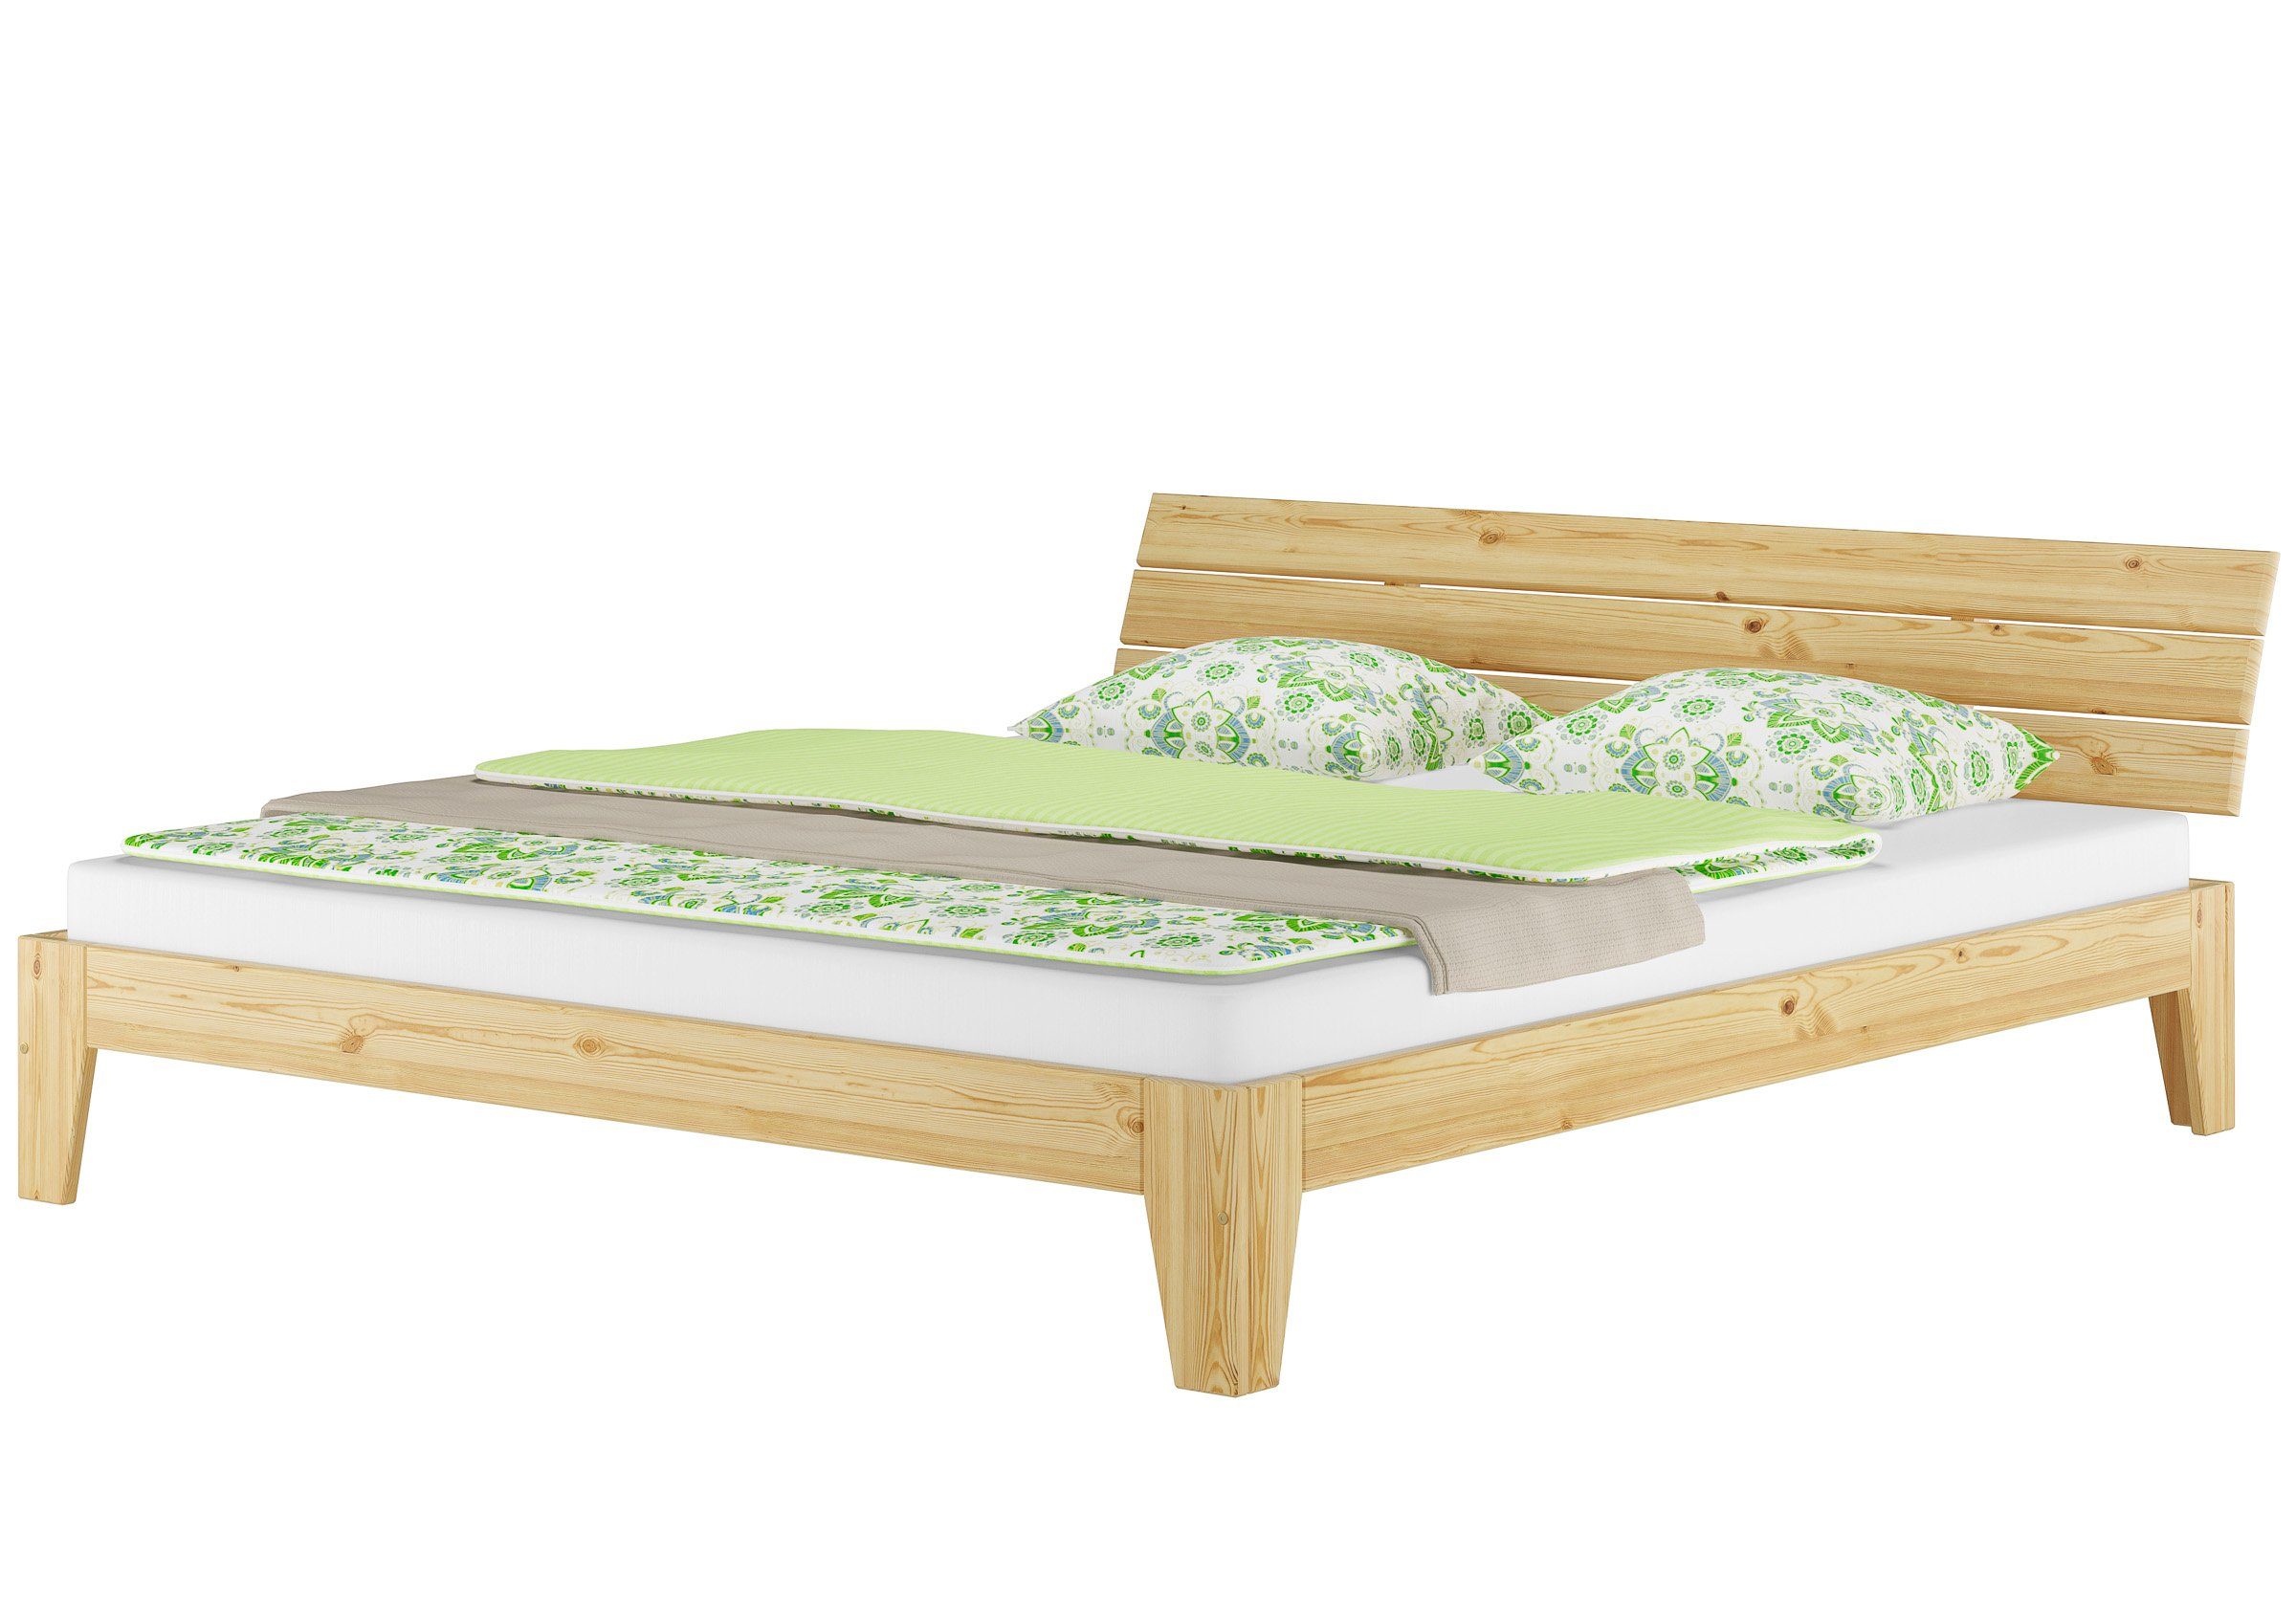 ERST-HOLZ Bett Doppelbett 180x200 Kiefer Kieferfarblos lackiert mit u. natur Matratzen, Rollrost